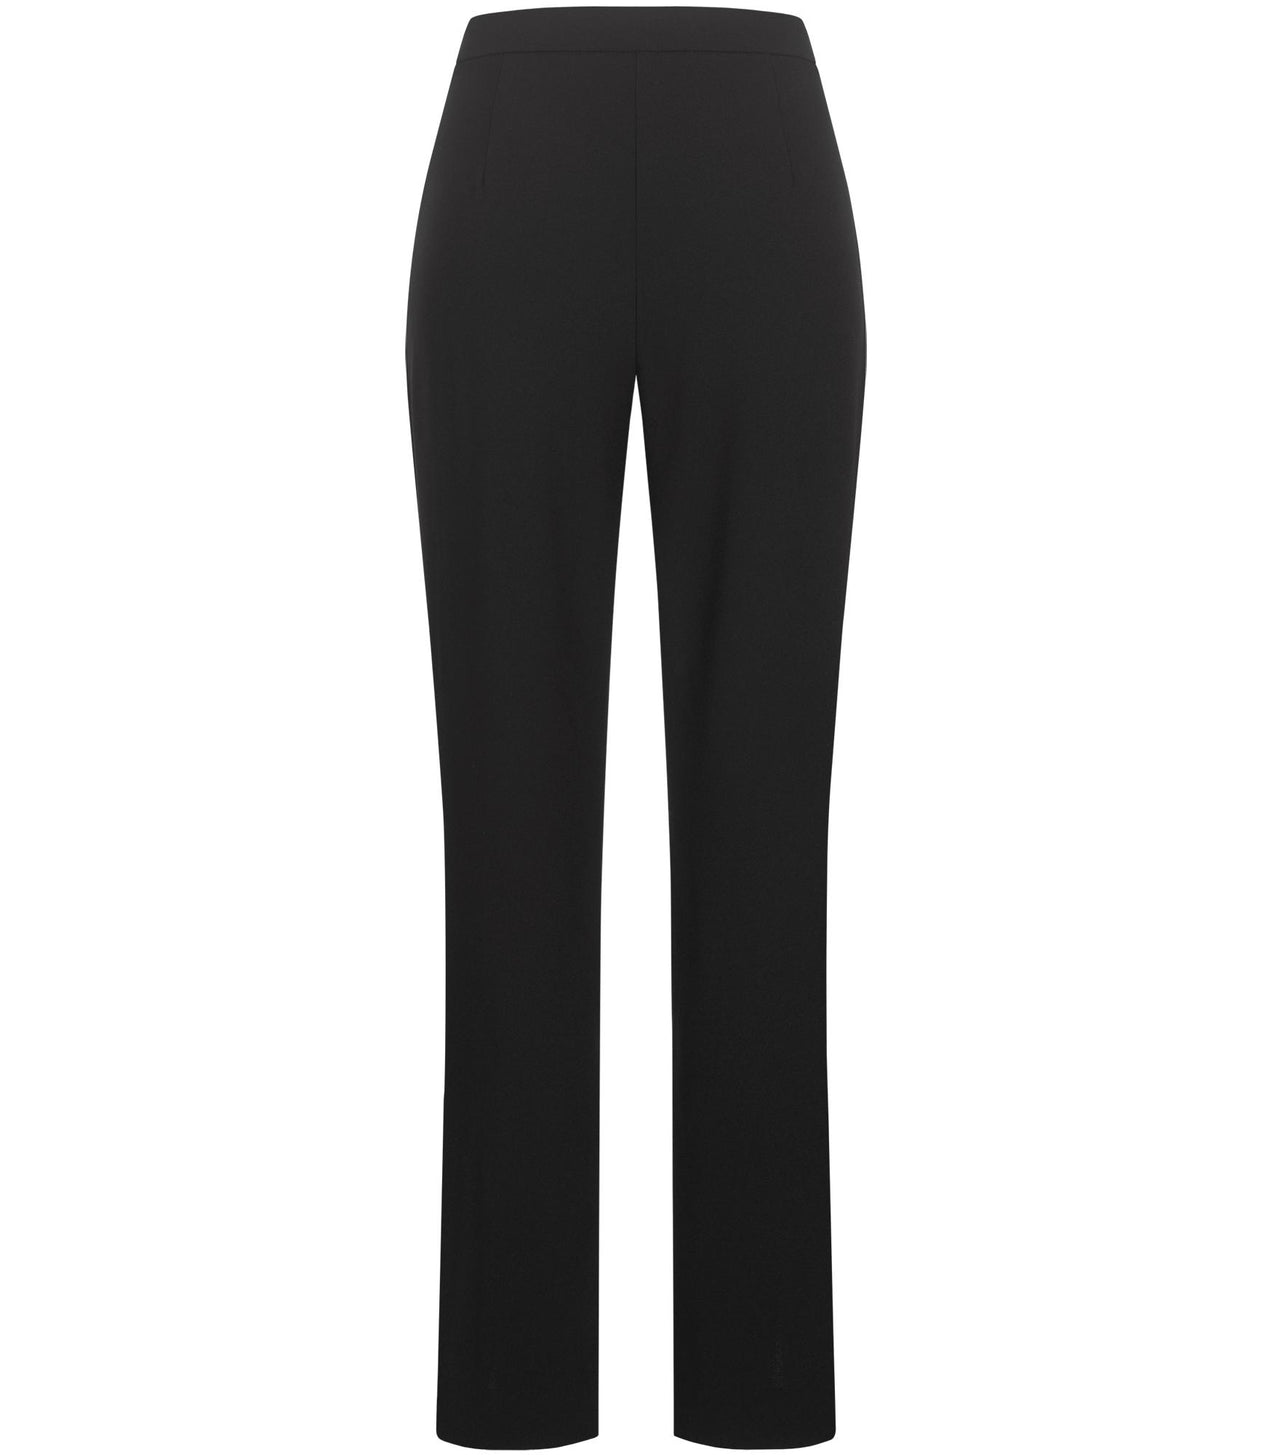 Felo Pants in Black-Pants-Annette Gortz-Debs Boutique